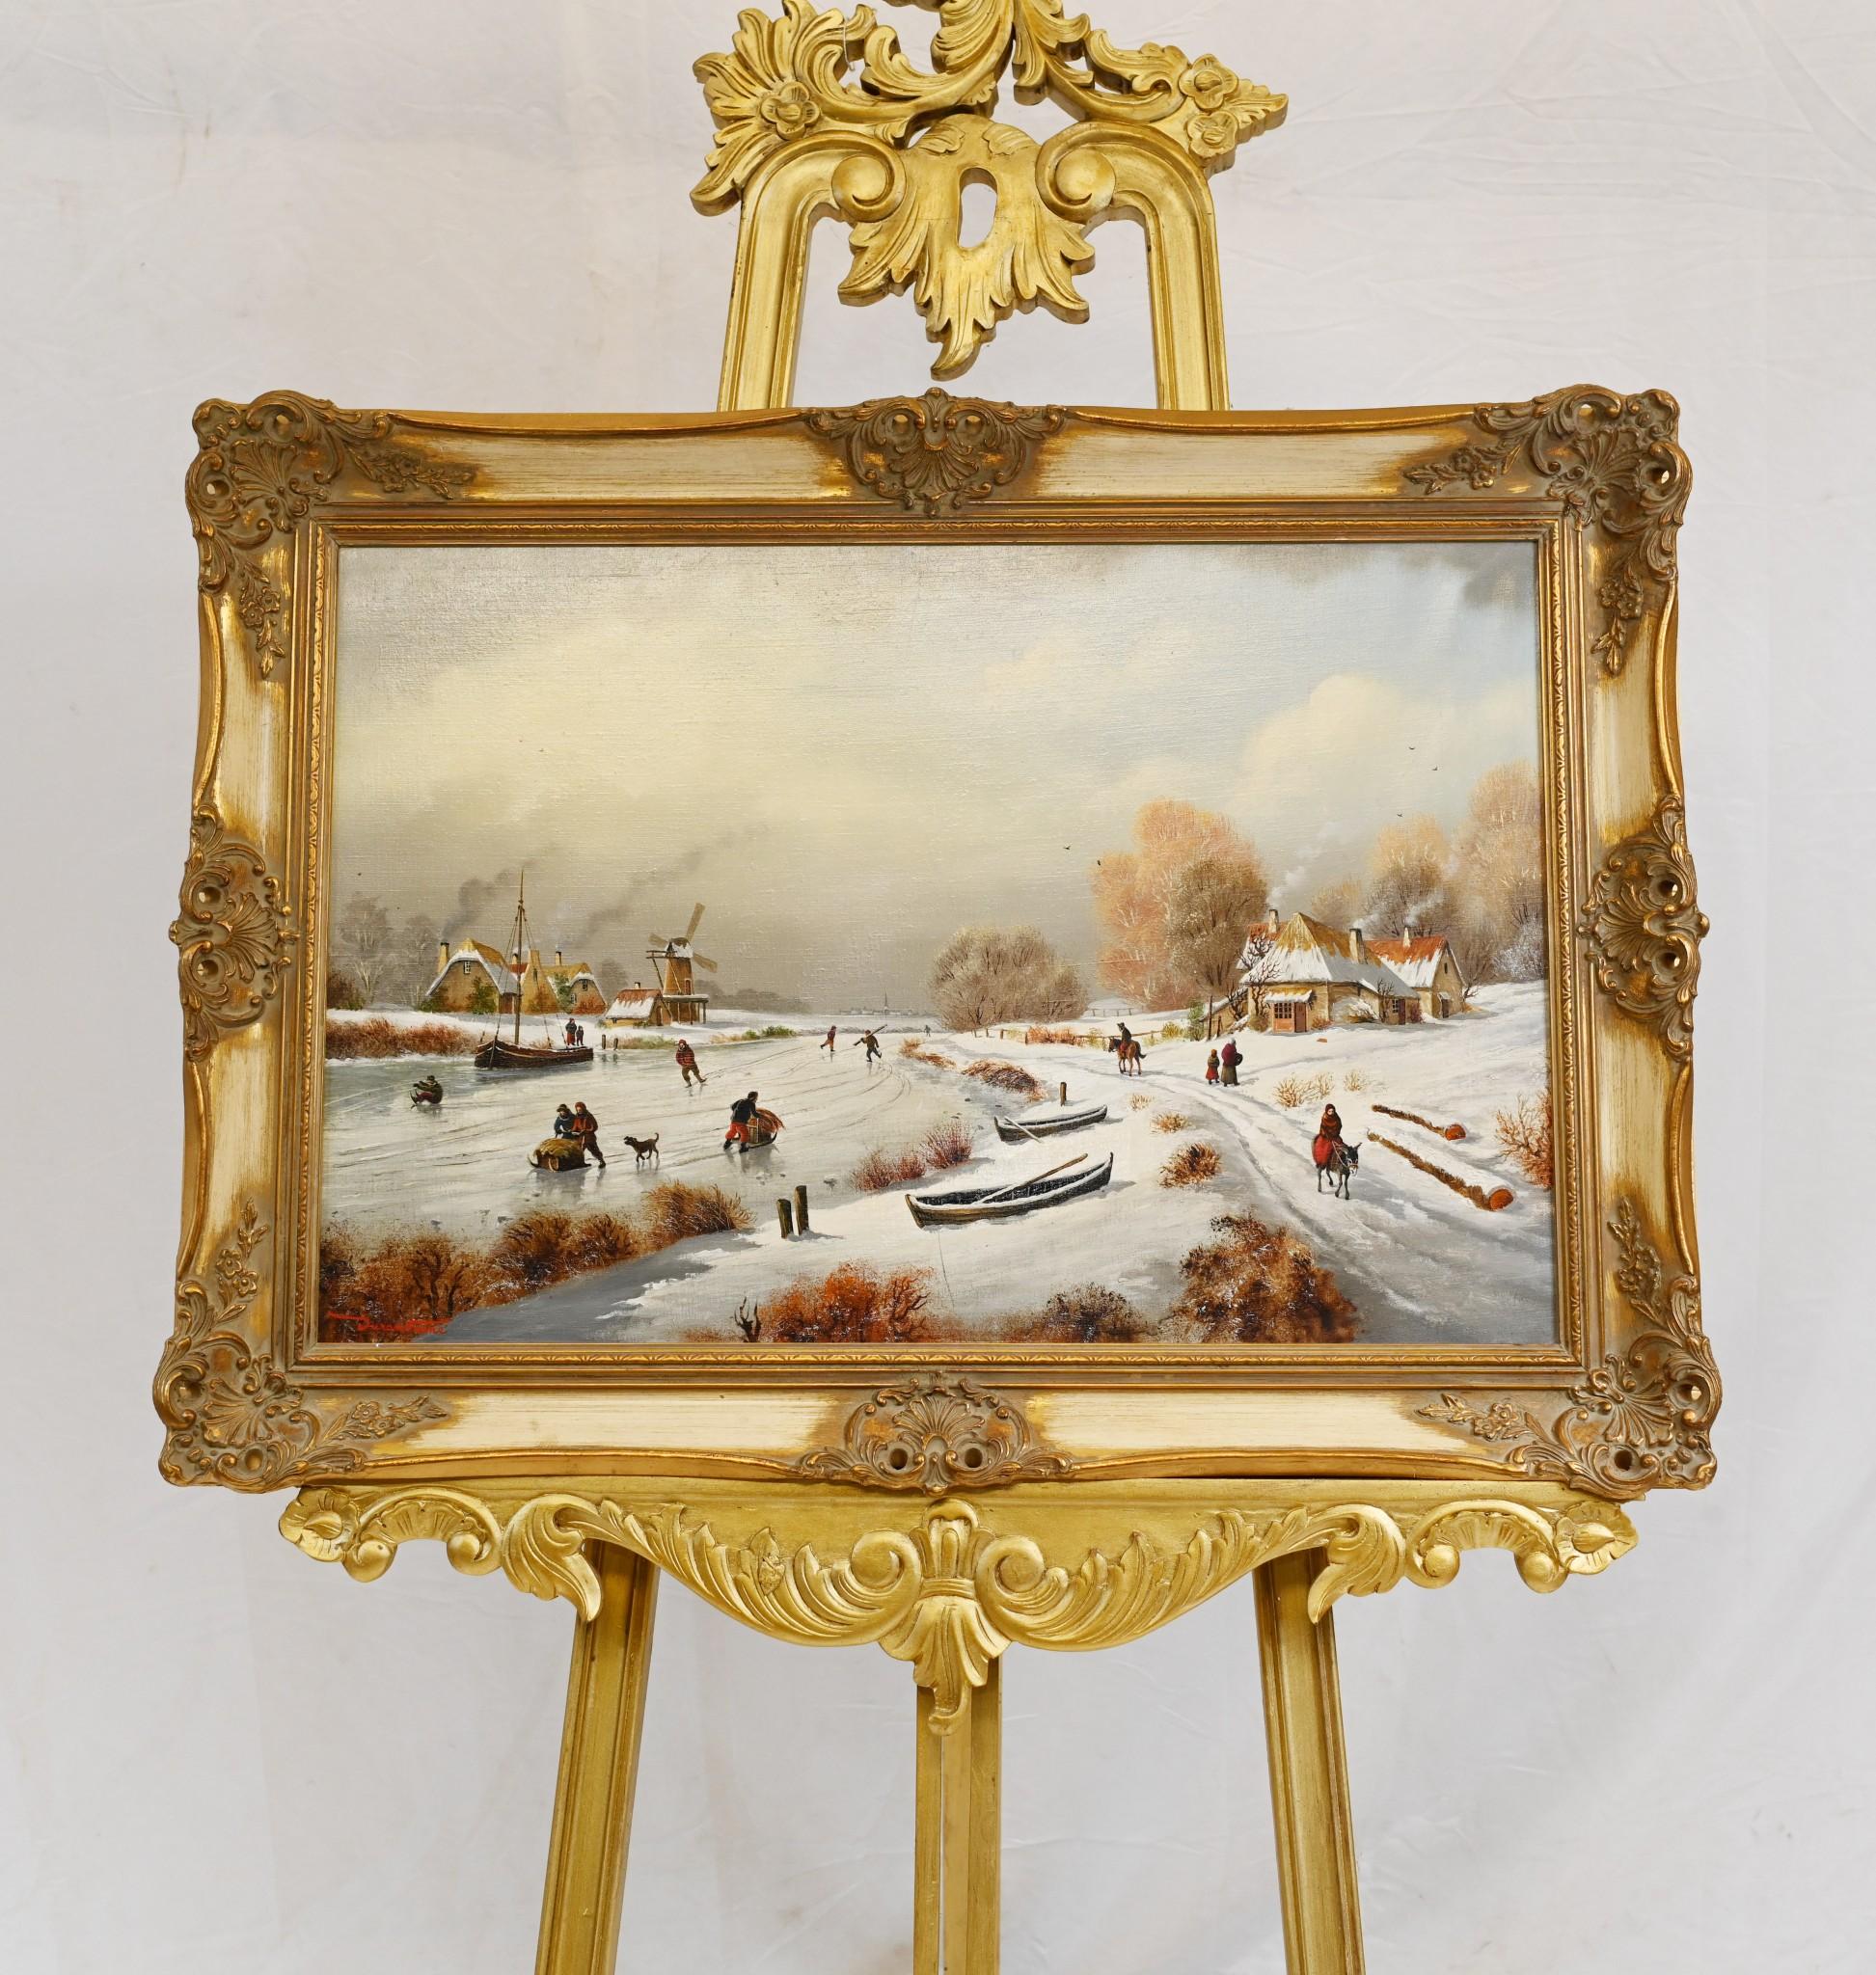 Superbe peinture à l'huile flamande représentant une magnifique scène de neige hivernale
L'artiste a vraiment capturé la scène avec beaucoup d'habileté
La rivière est gelée et des patineurs et des luges la parcourent.
Bien sûr, il y a un moulin à